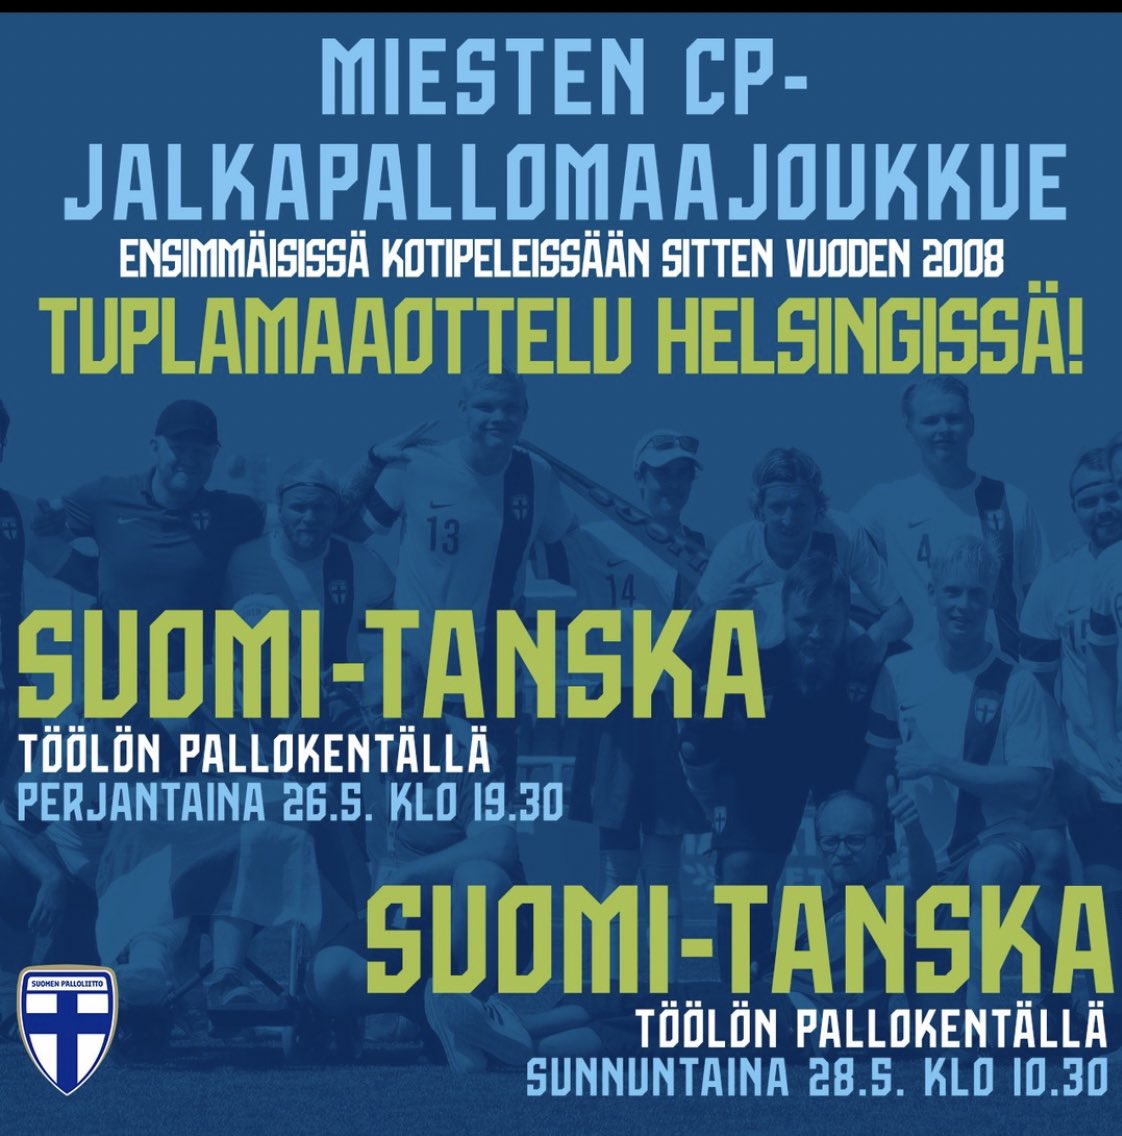 CP-jalkapallon superviikonloppu Helsingissä 26.–28.5. Lue lisää: palloliitto.fi/ajankohtaista/… #cpjalkapallo #vammaisjalkapallo #palloliitto #siipirikot #ifcpf